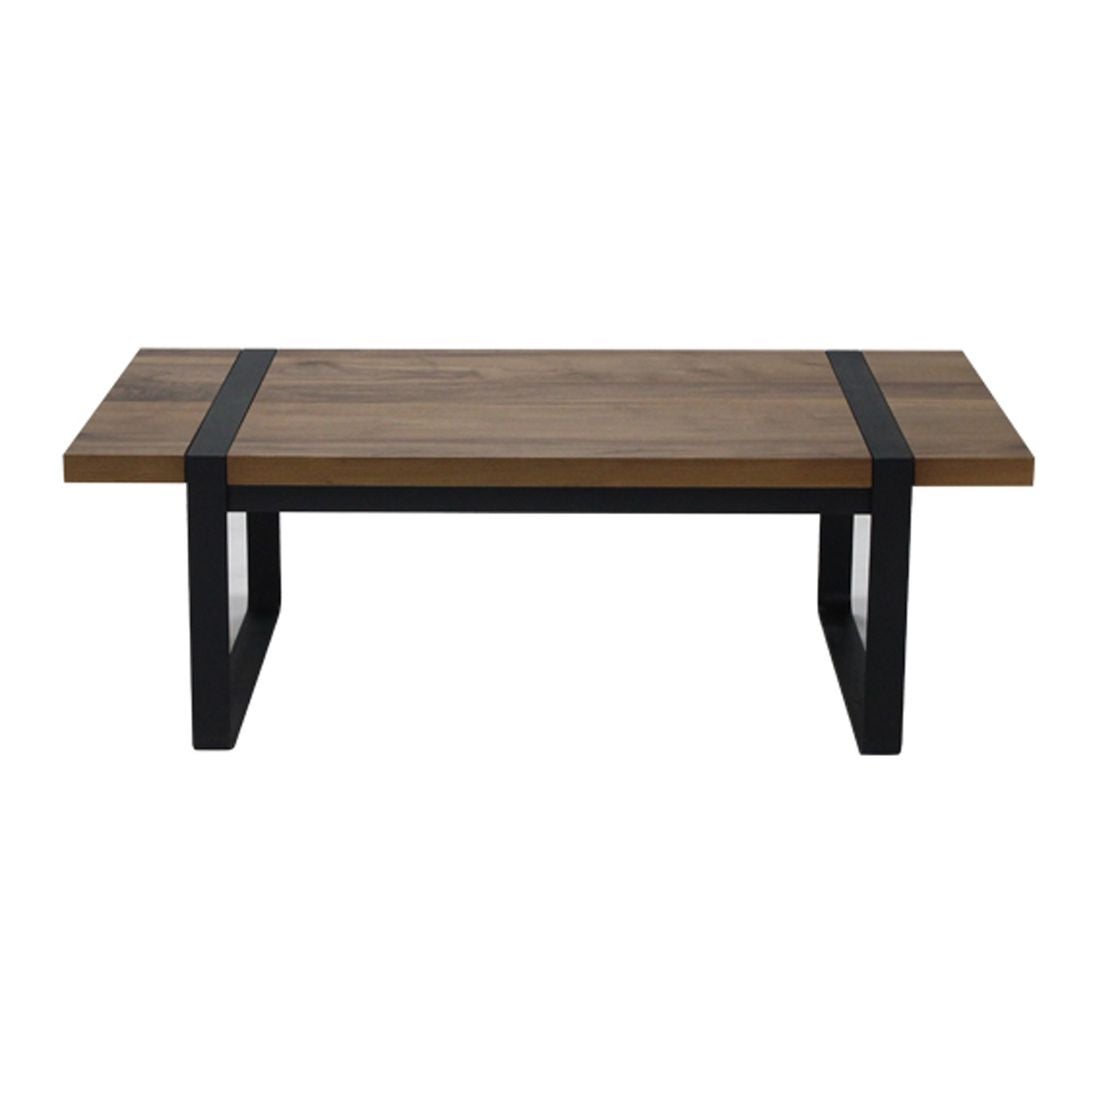 โต๊ะกลาง โต๊ะกลางเหล็กท๊อปไม้ รุ่น G-Nine-SB Design Square